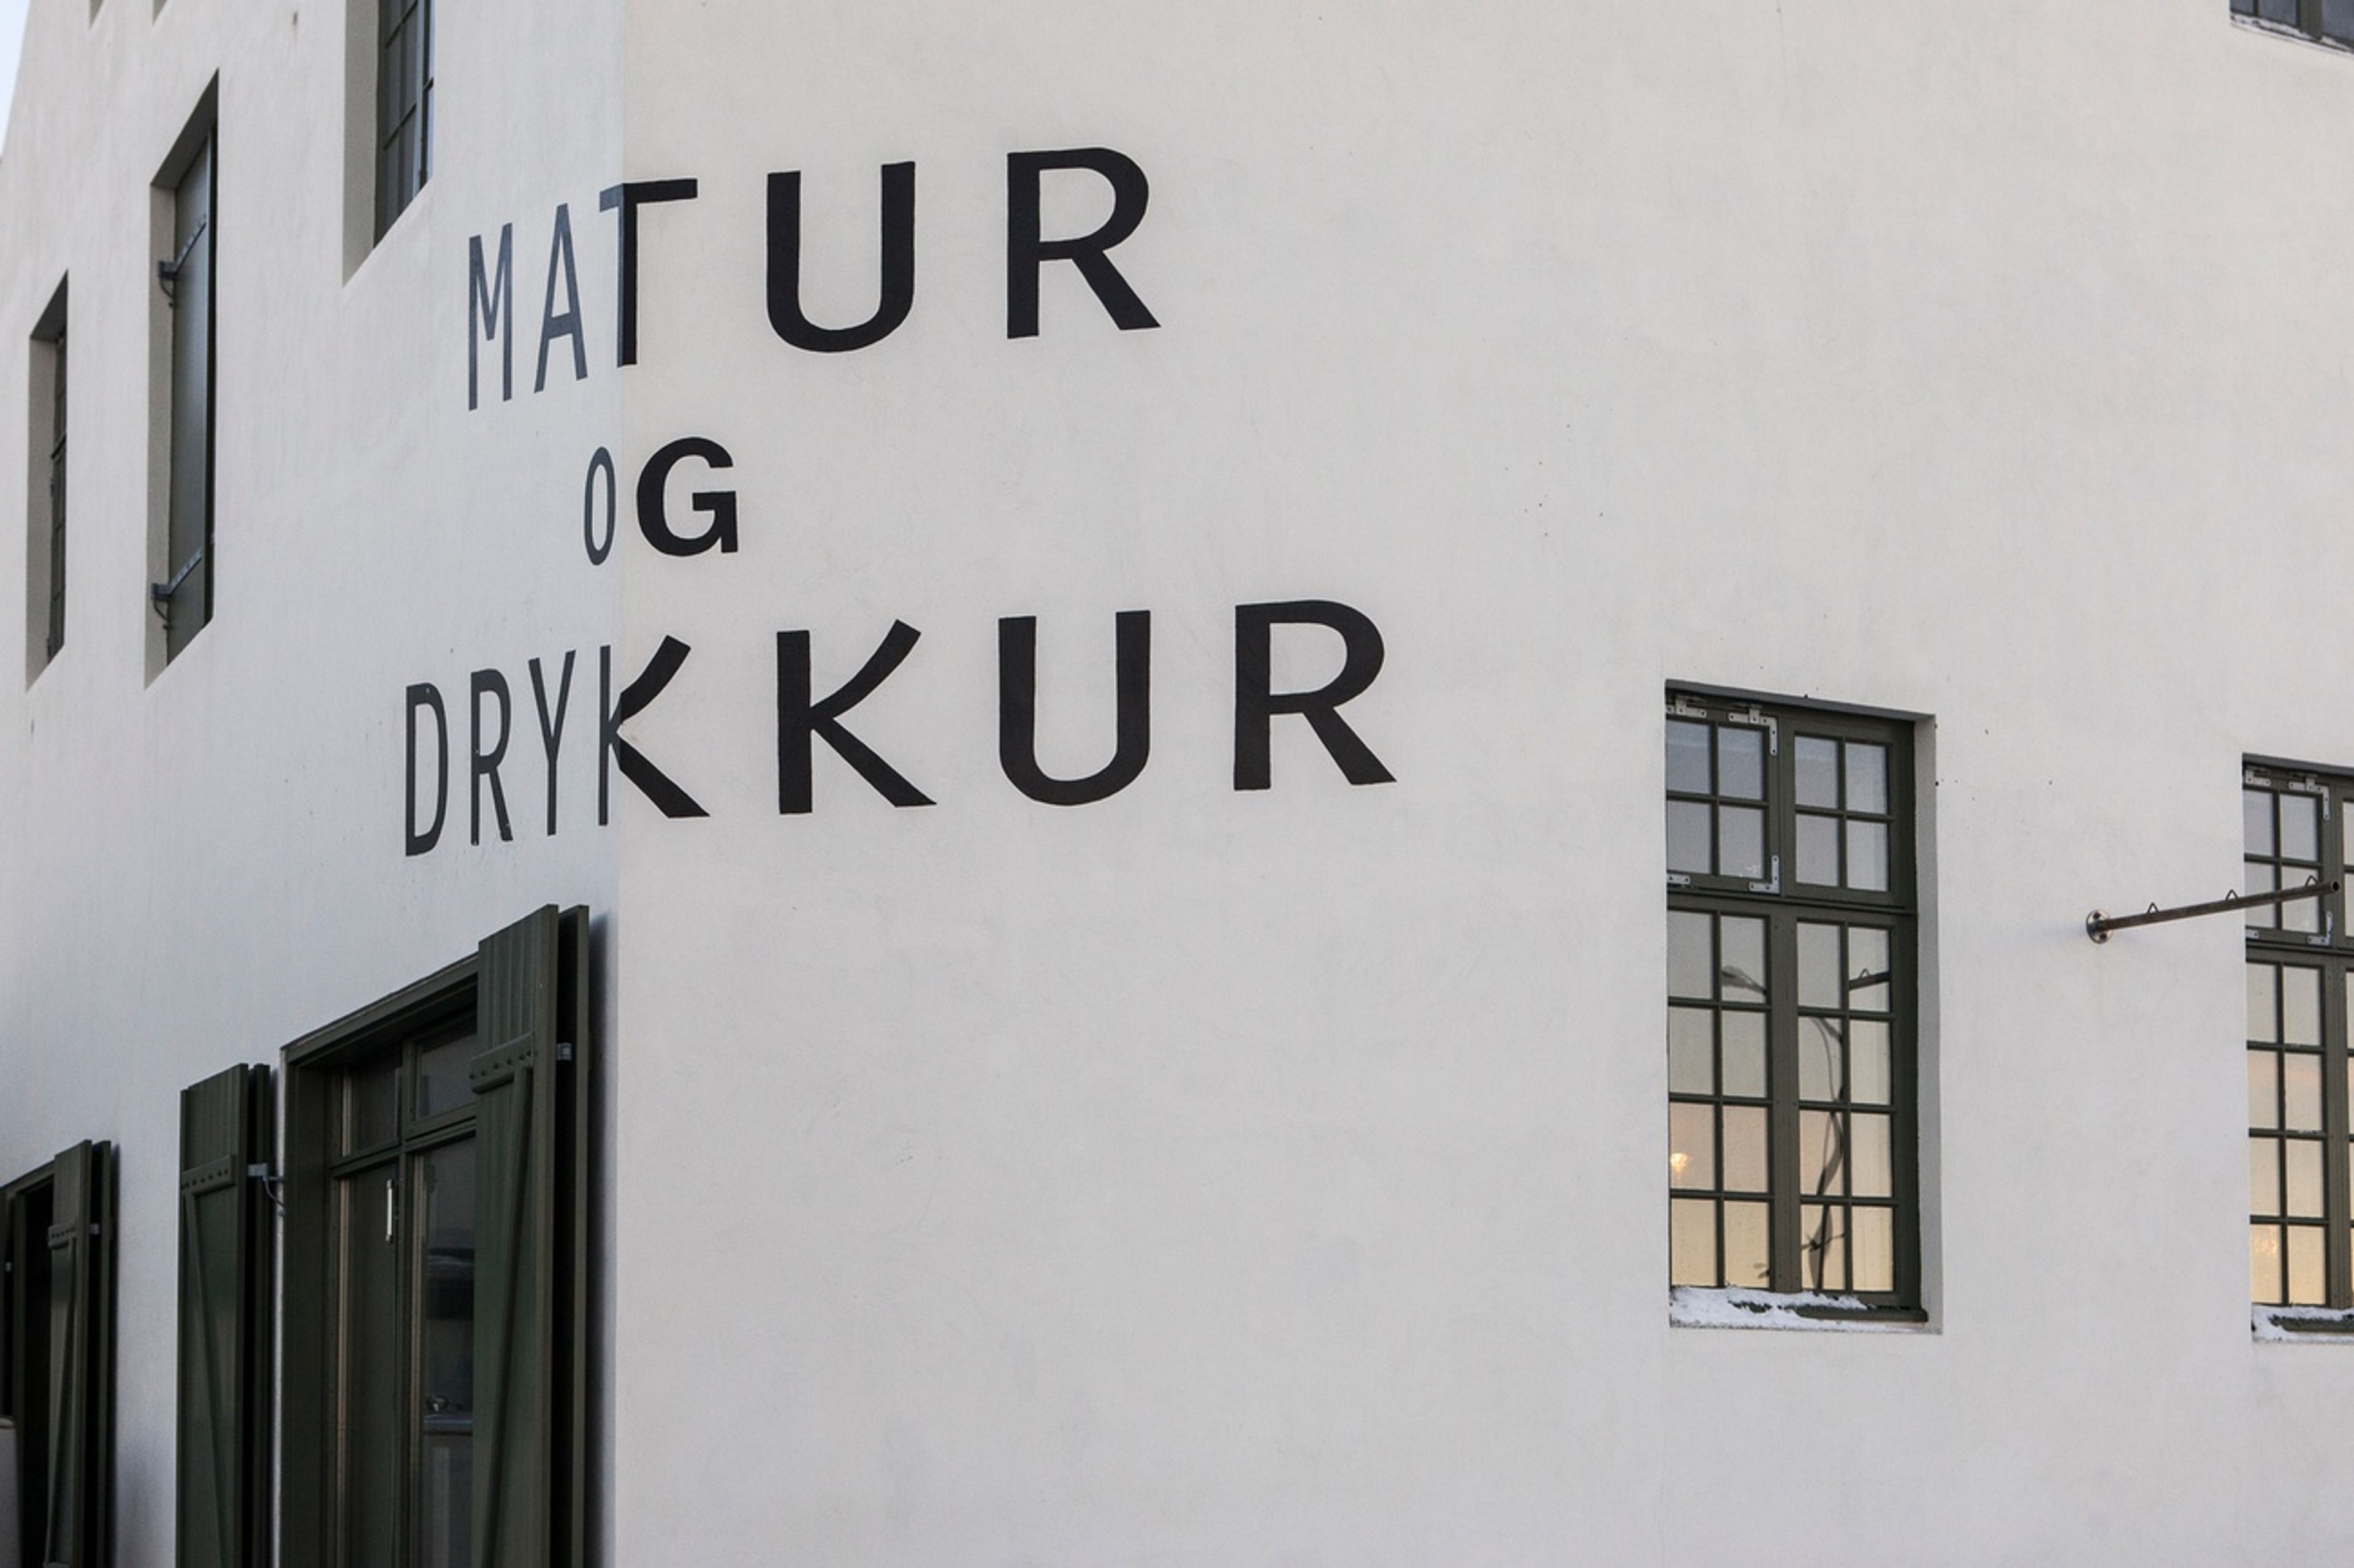 Matur og Drykkur in Iceland